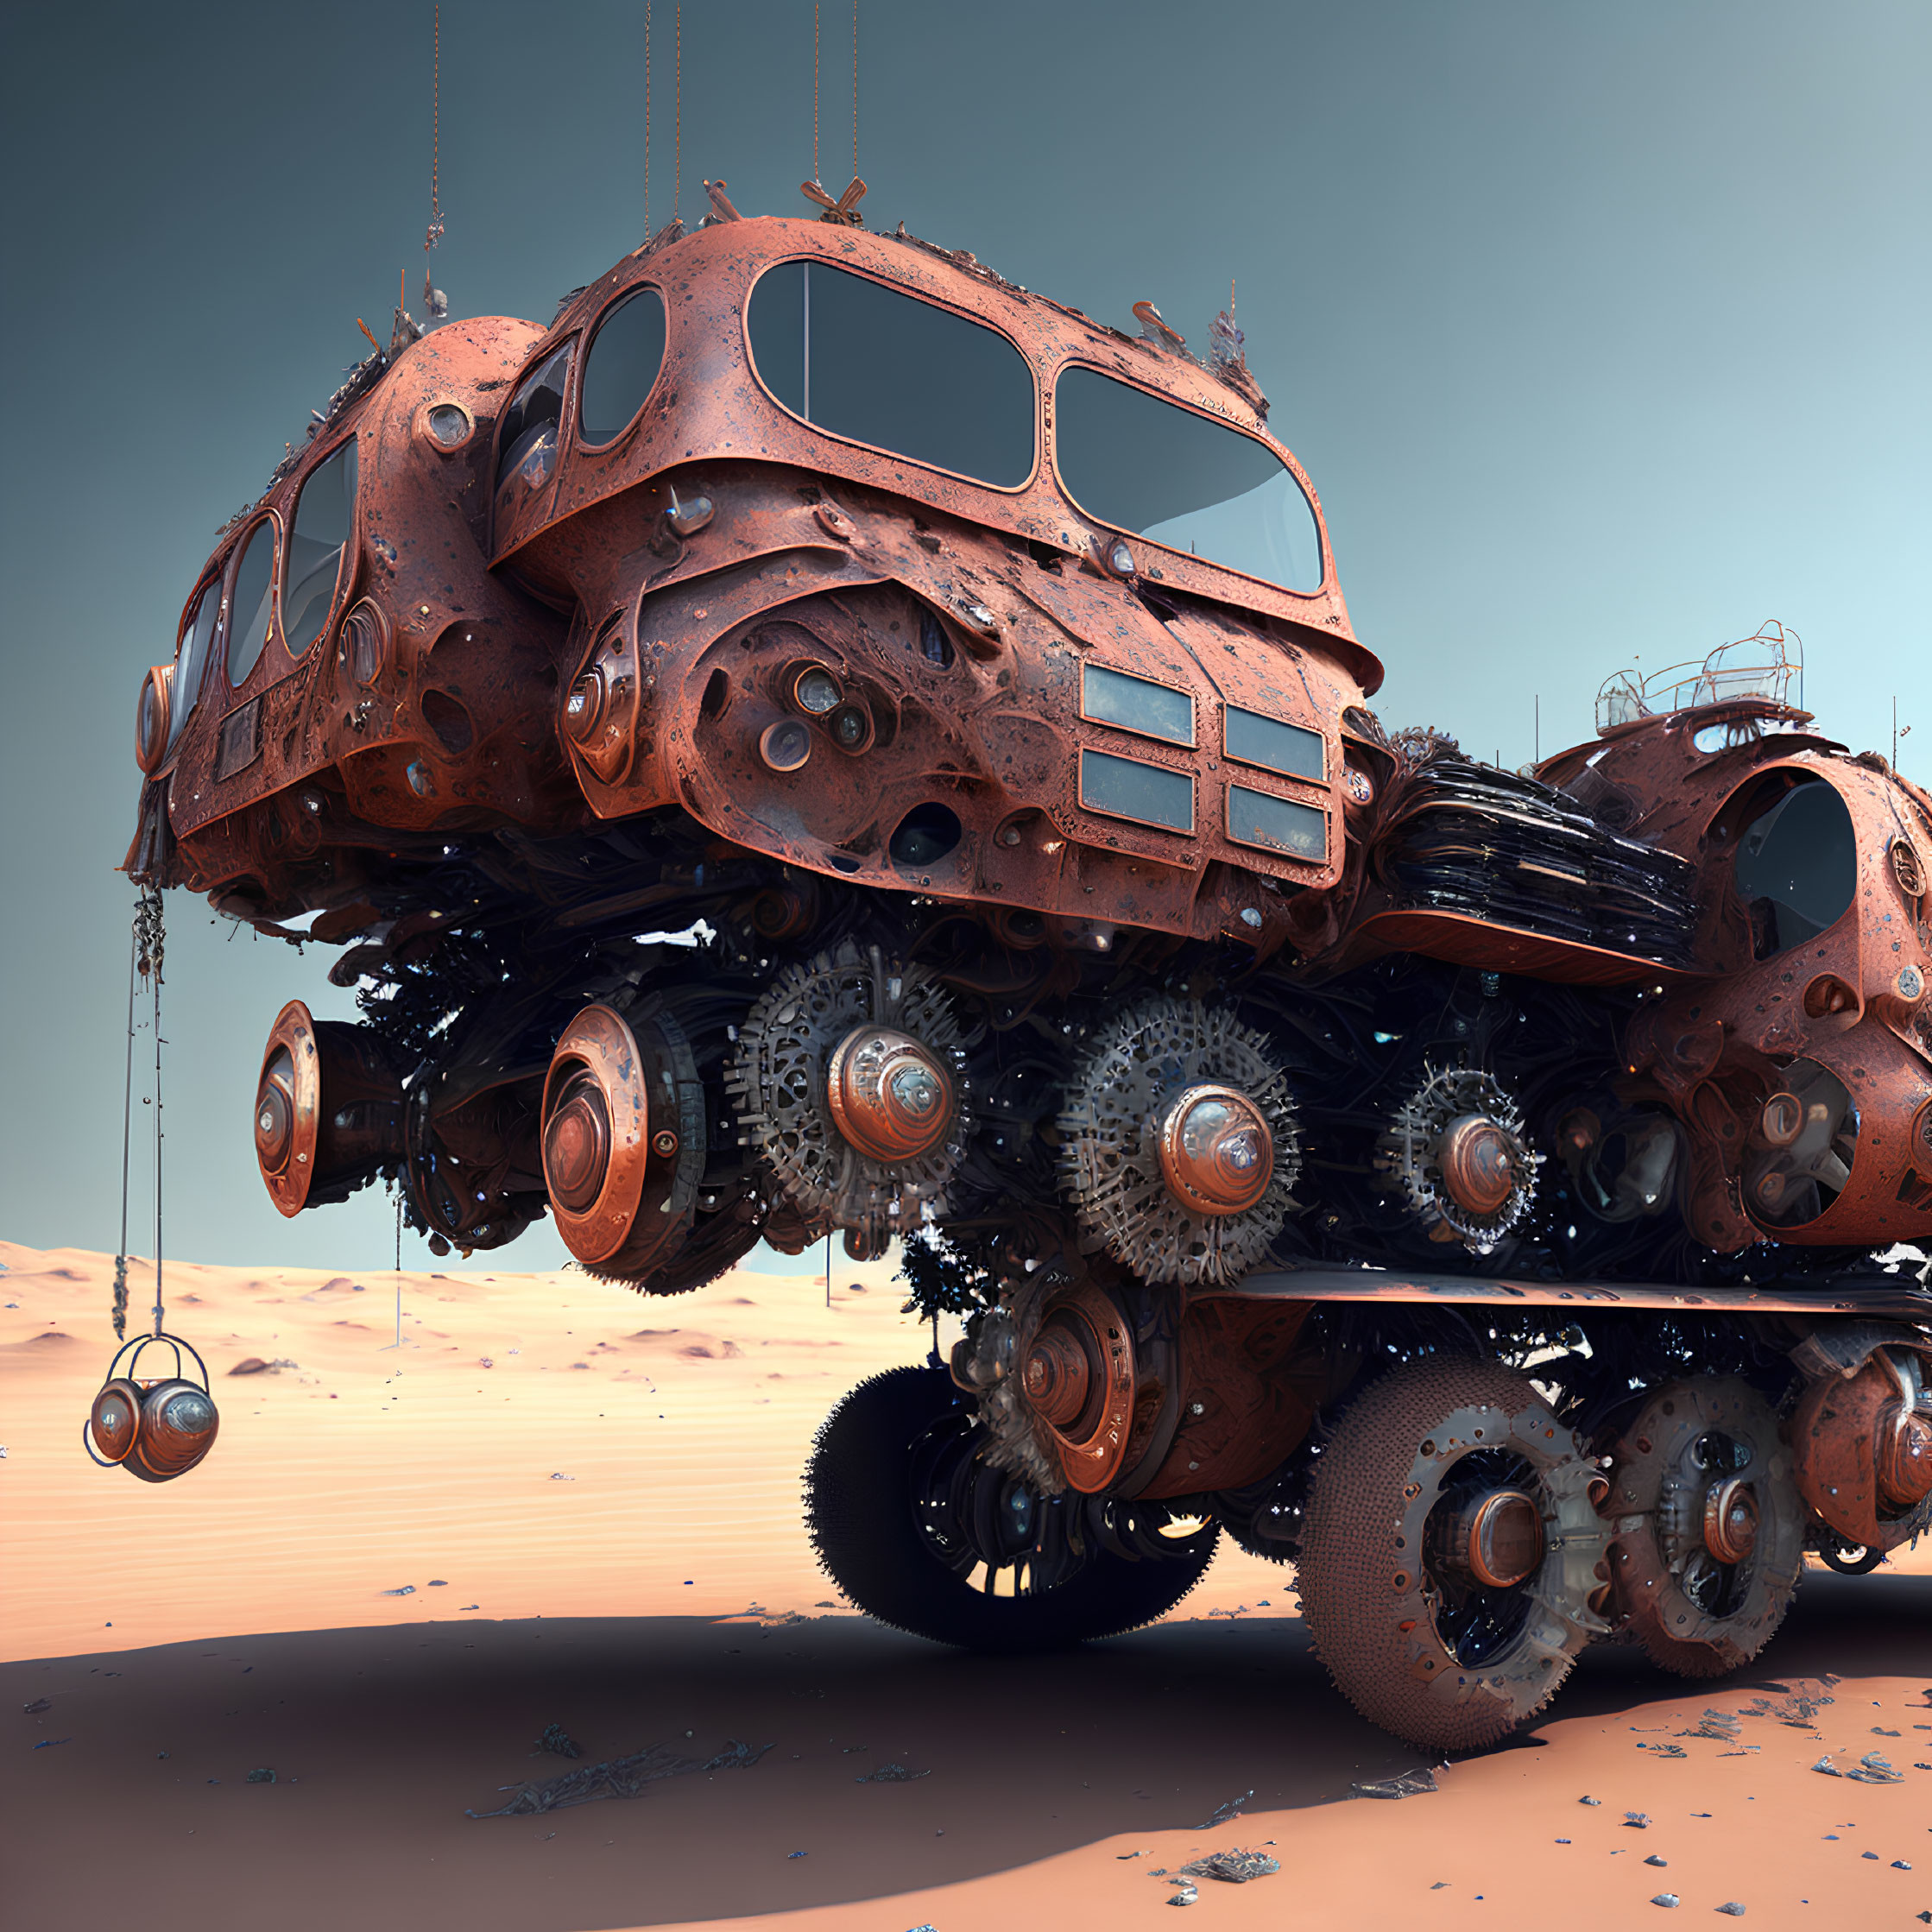 Rusty, multi-wheeled vehicle in barren desert landscape.